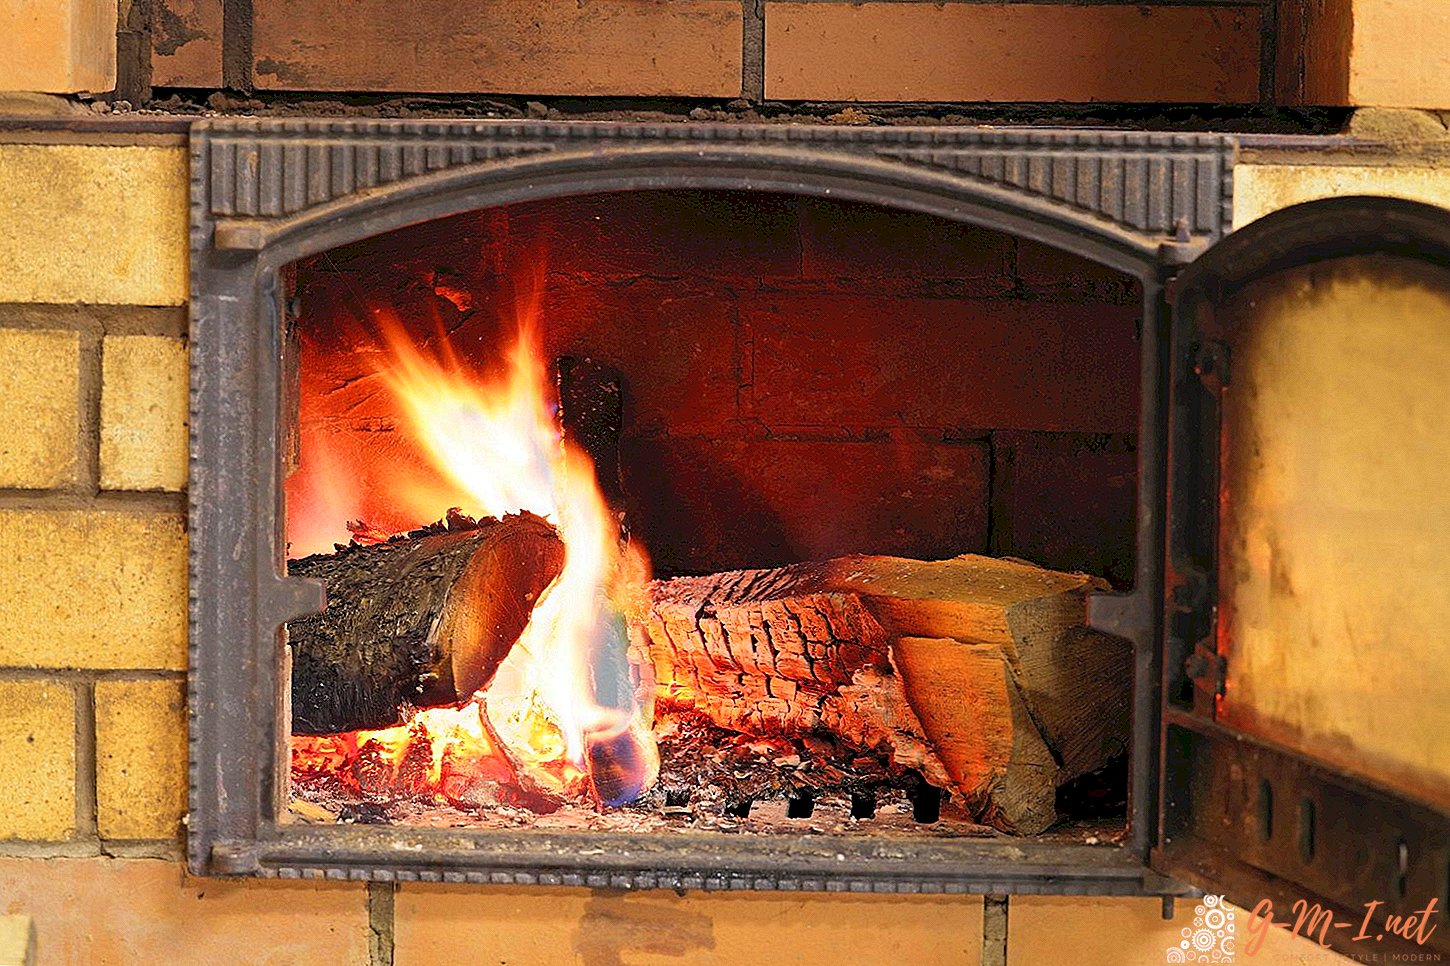 Reiniging van de oven